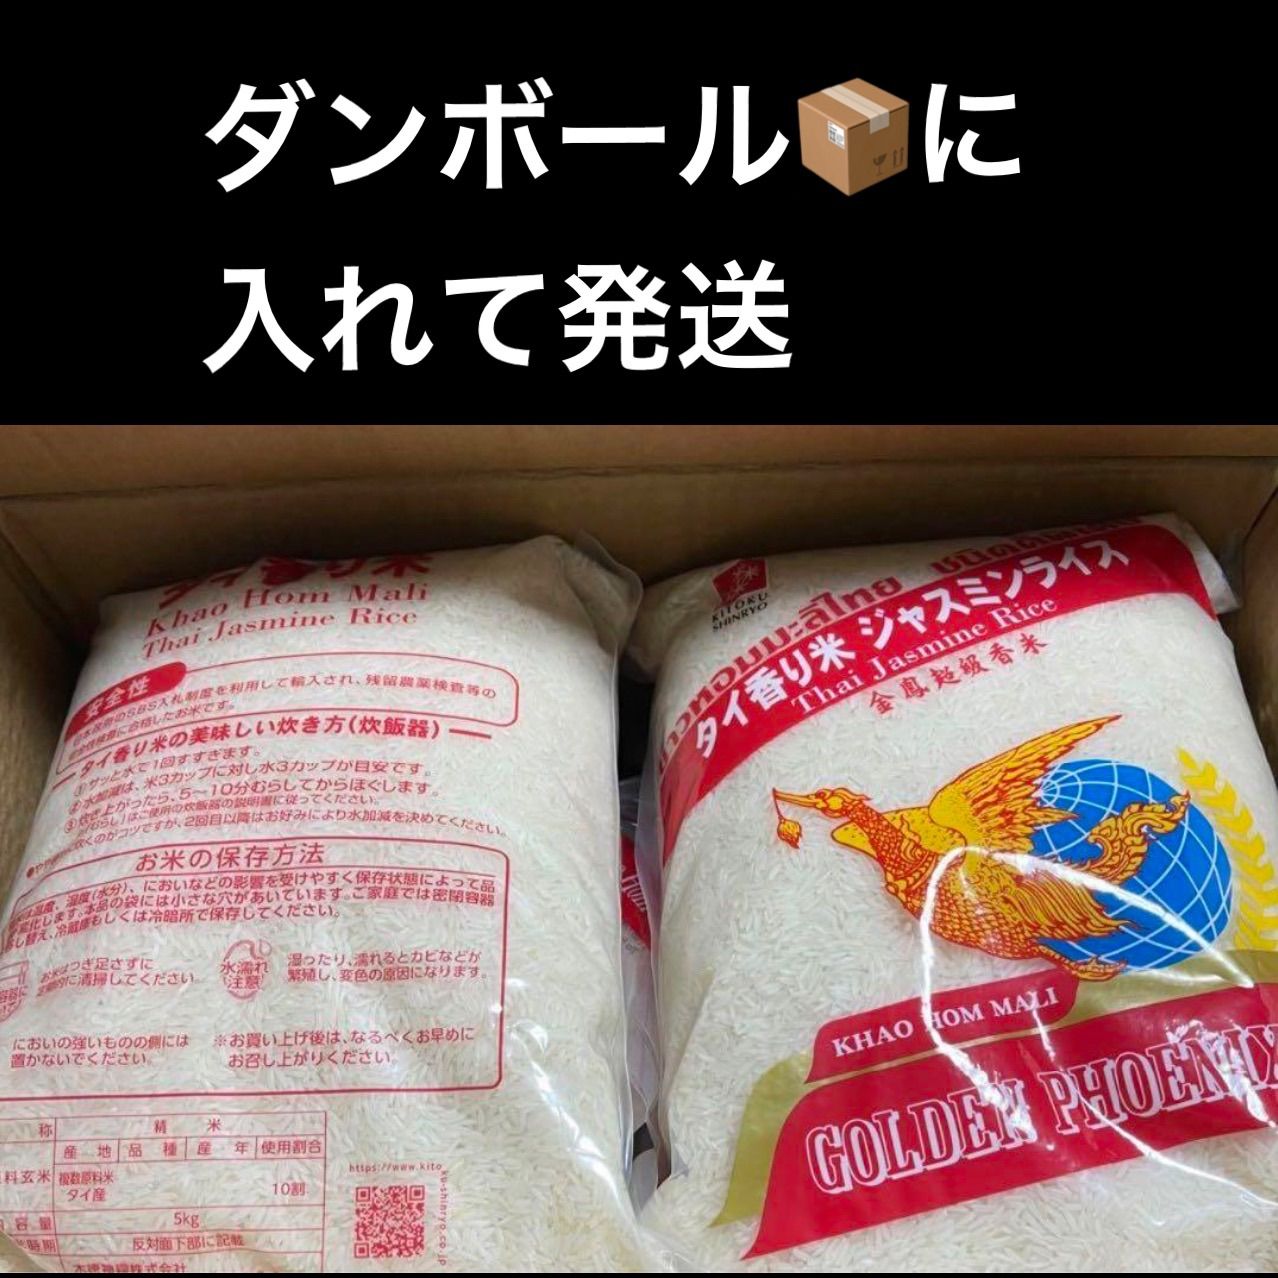 タイ産ジャスミンライス 900g×2袋 ゴールデンフェニックス - 米・雑穀